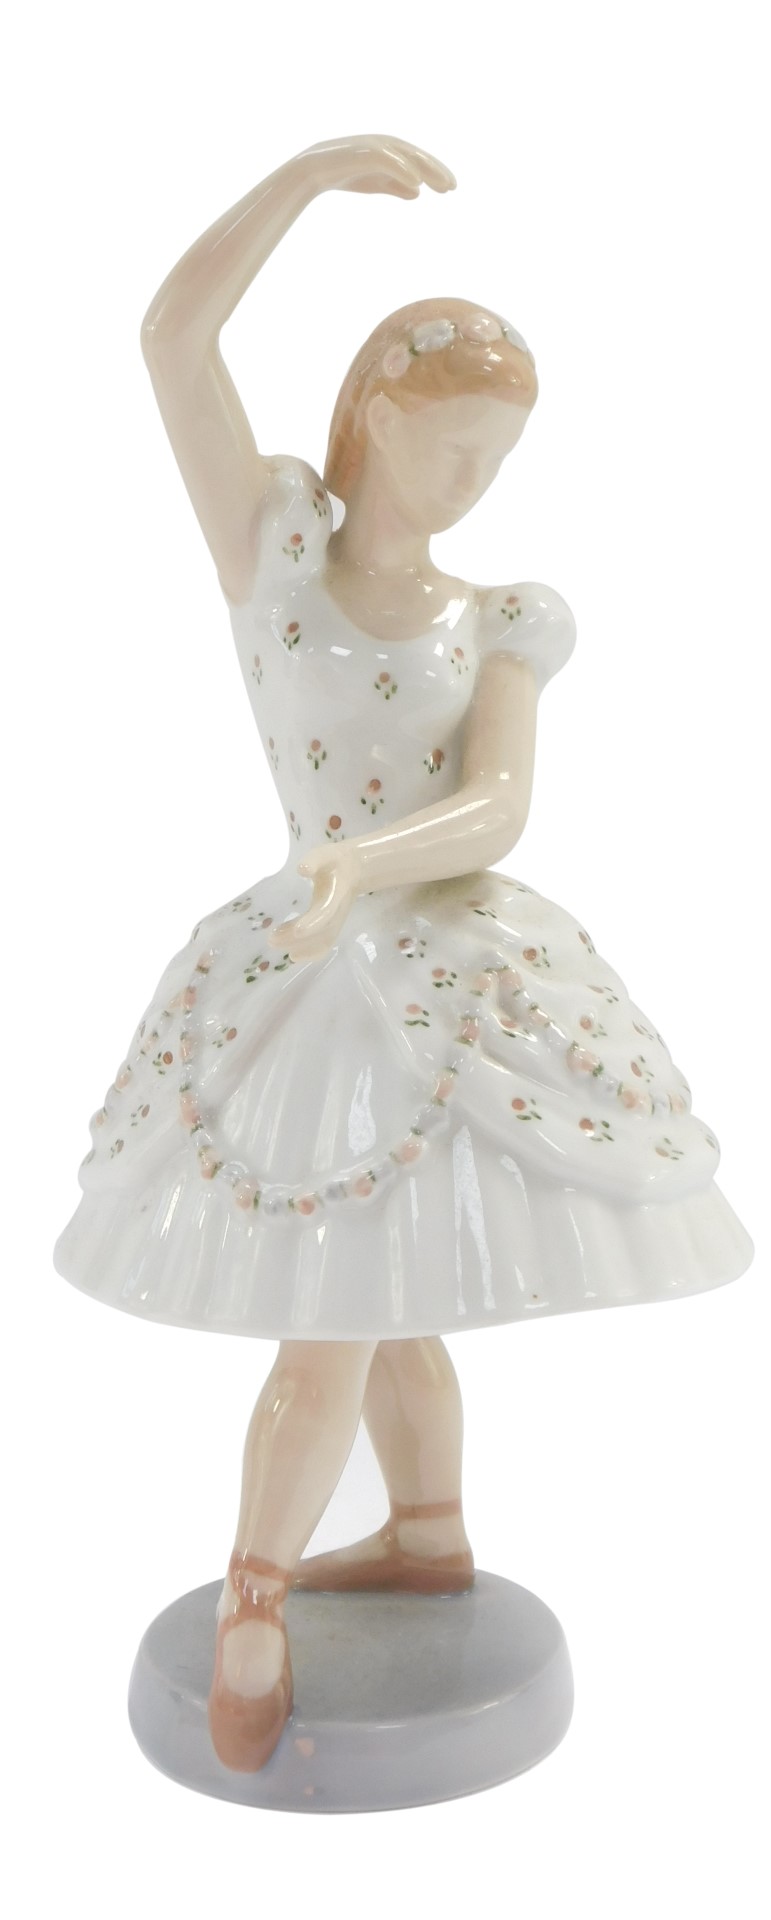 A Bing & Grondahl porcelain figure of a ballerina, no 2355, 24cm high.